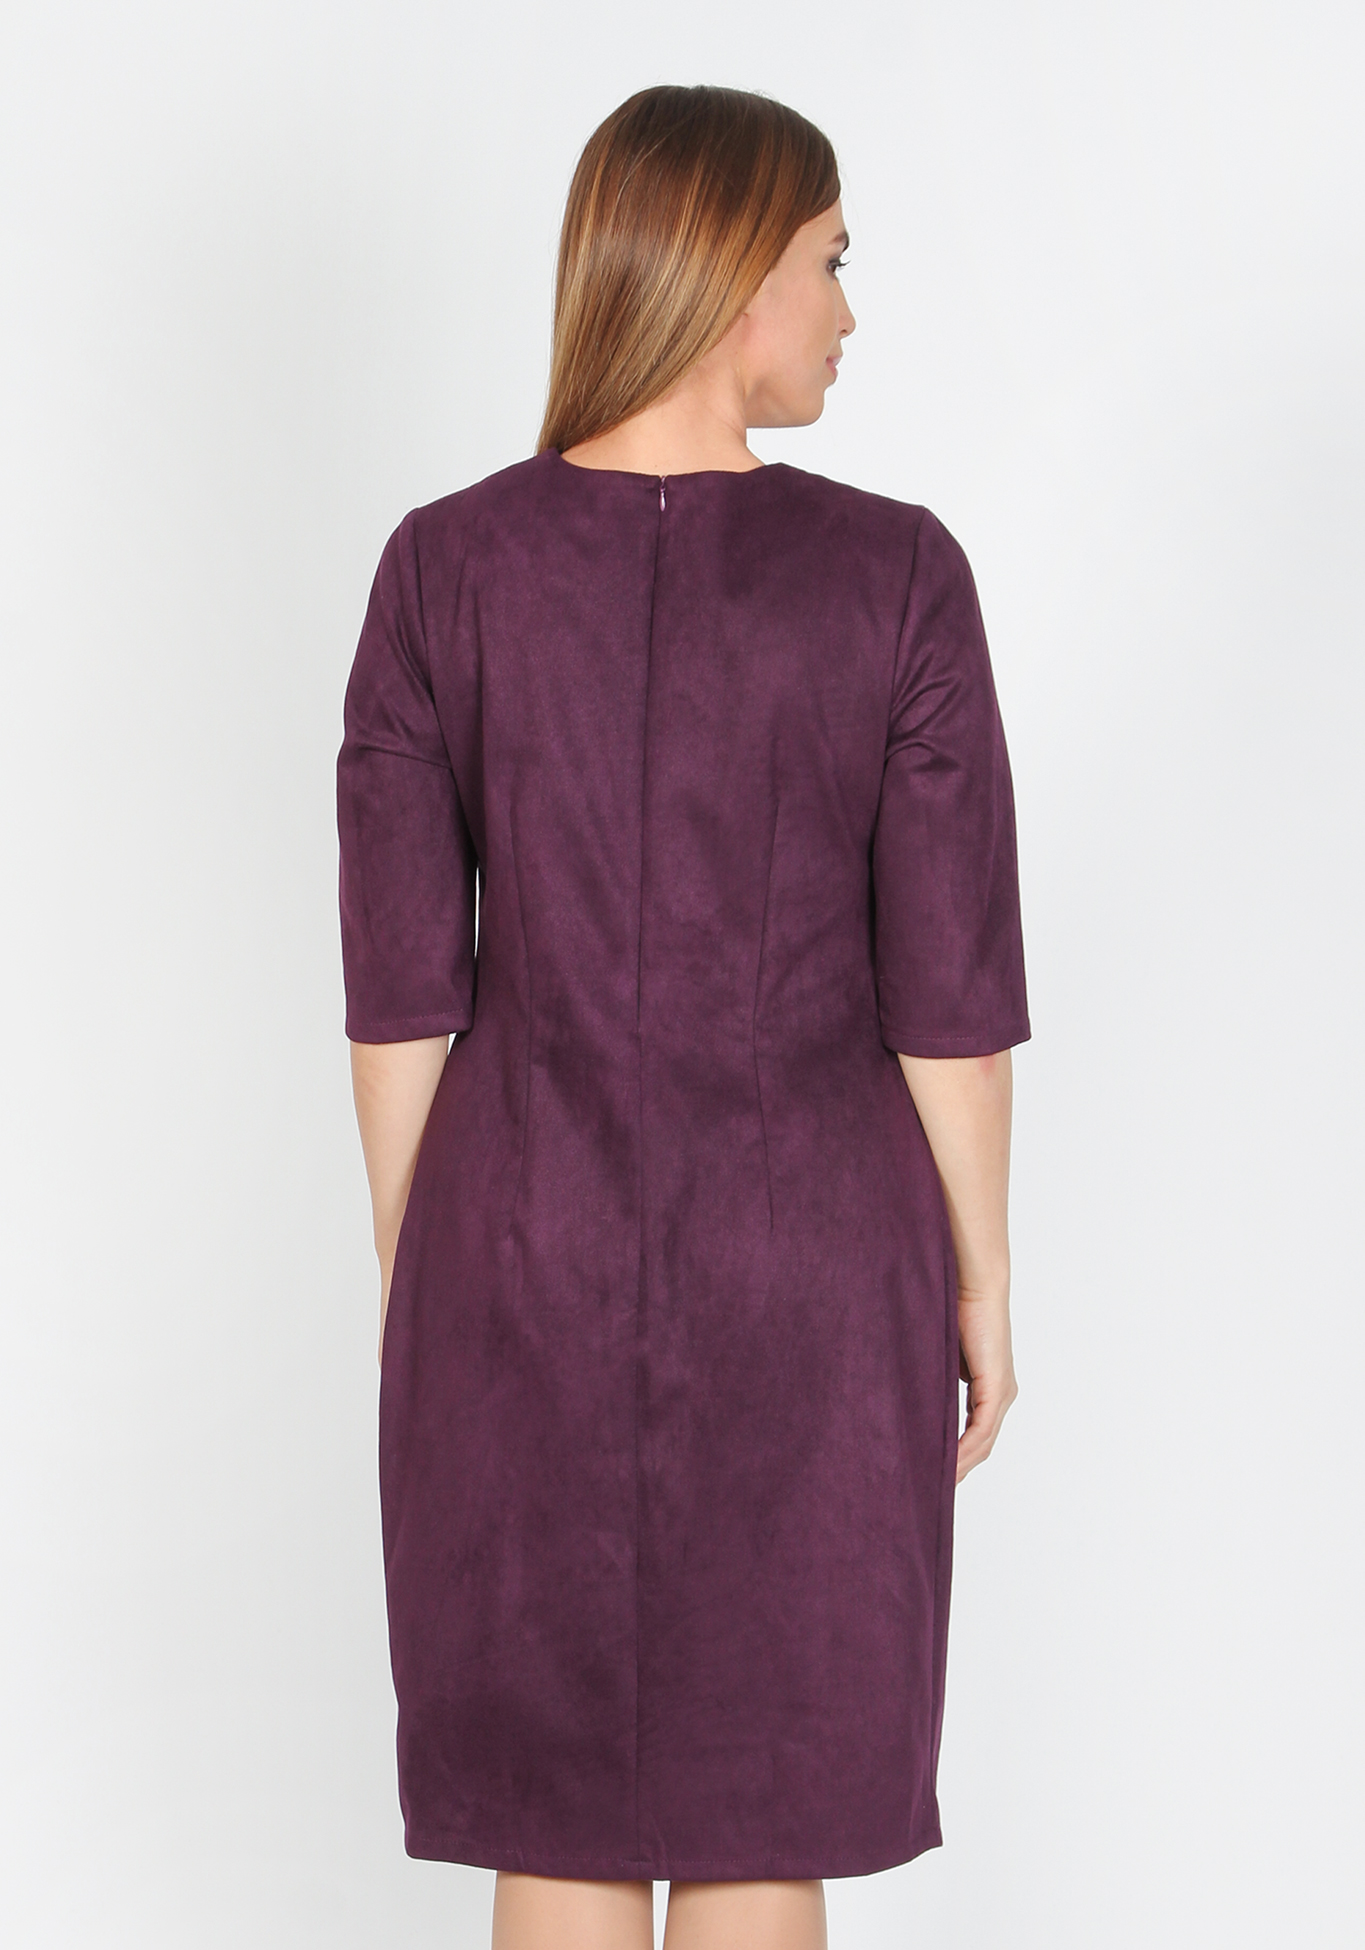 Платье «Серебряные брызги», размер 52, цвет темно-синий - фото 5